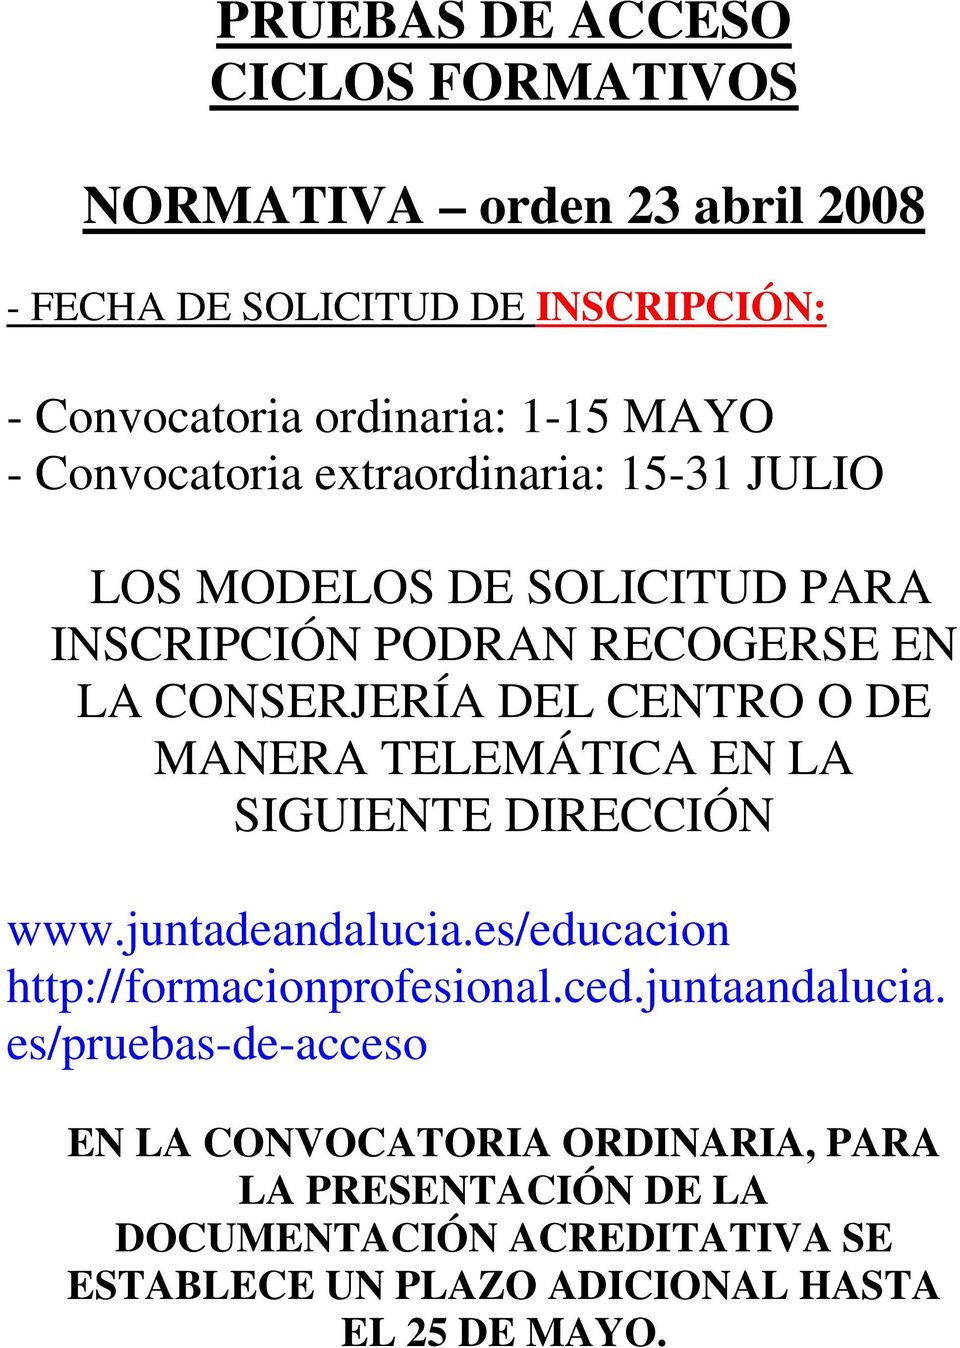 MANERA TELEMÁTICA EN LA SIGUIENTE DIRECCIÓN www.juntadeandalucia.es/educacion http://formacionprofesional.ced.juntaandalucia.